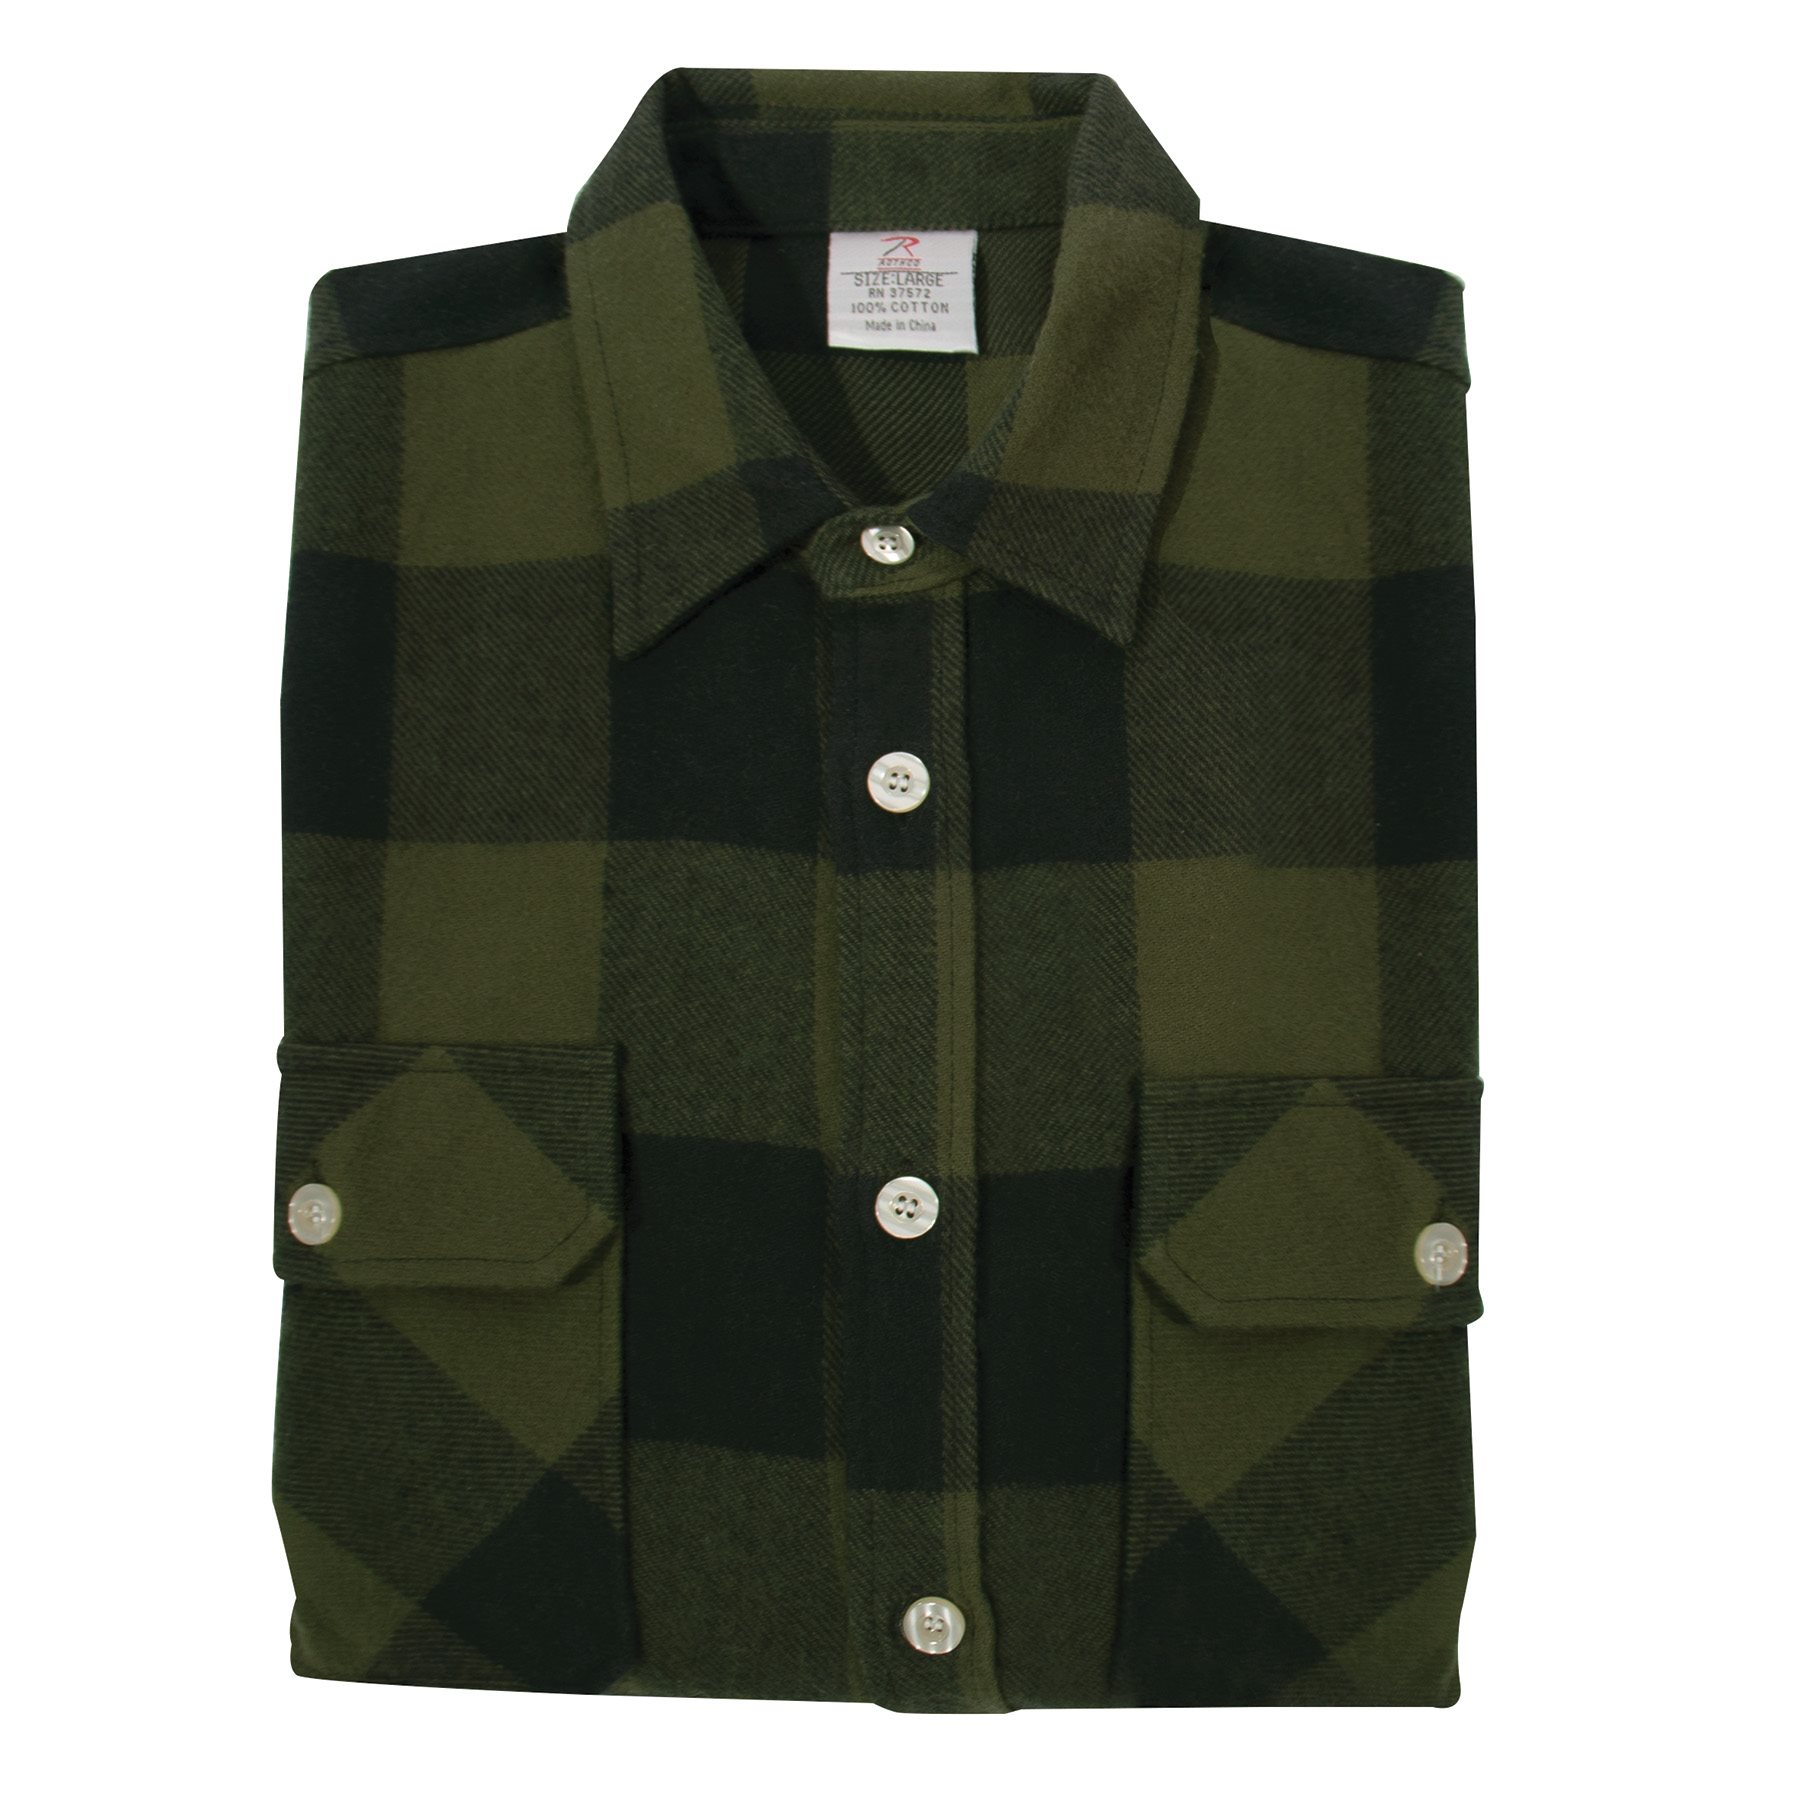 Lumberjack plaid shirt FLANNEL OLIVE DRAB ROTHCO 47385 L-11